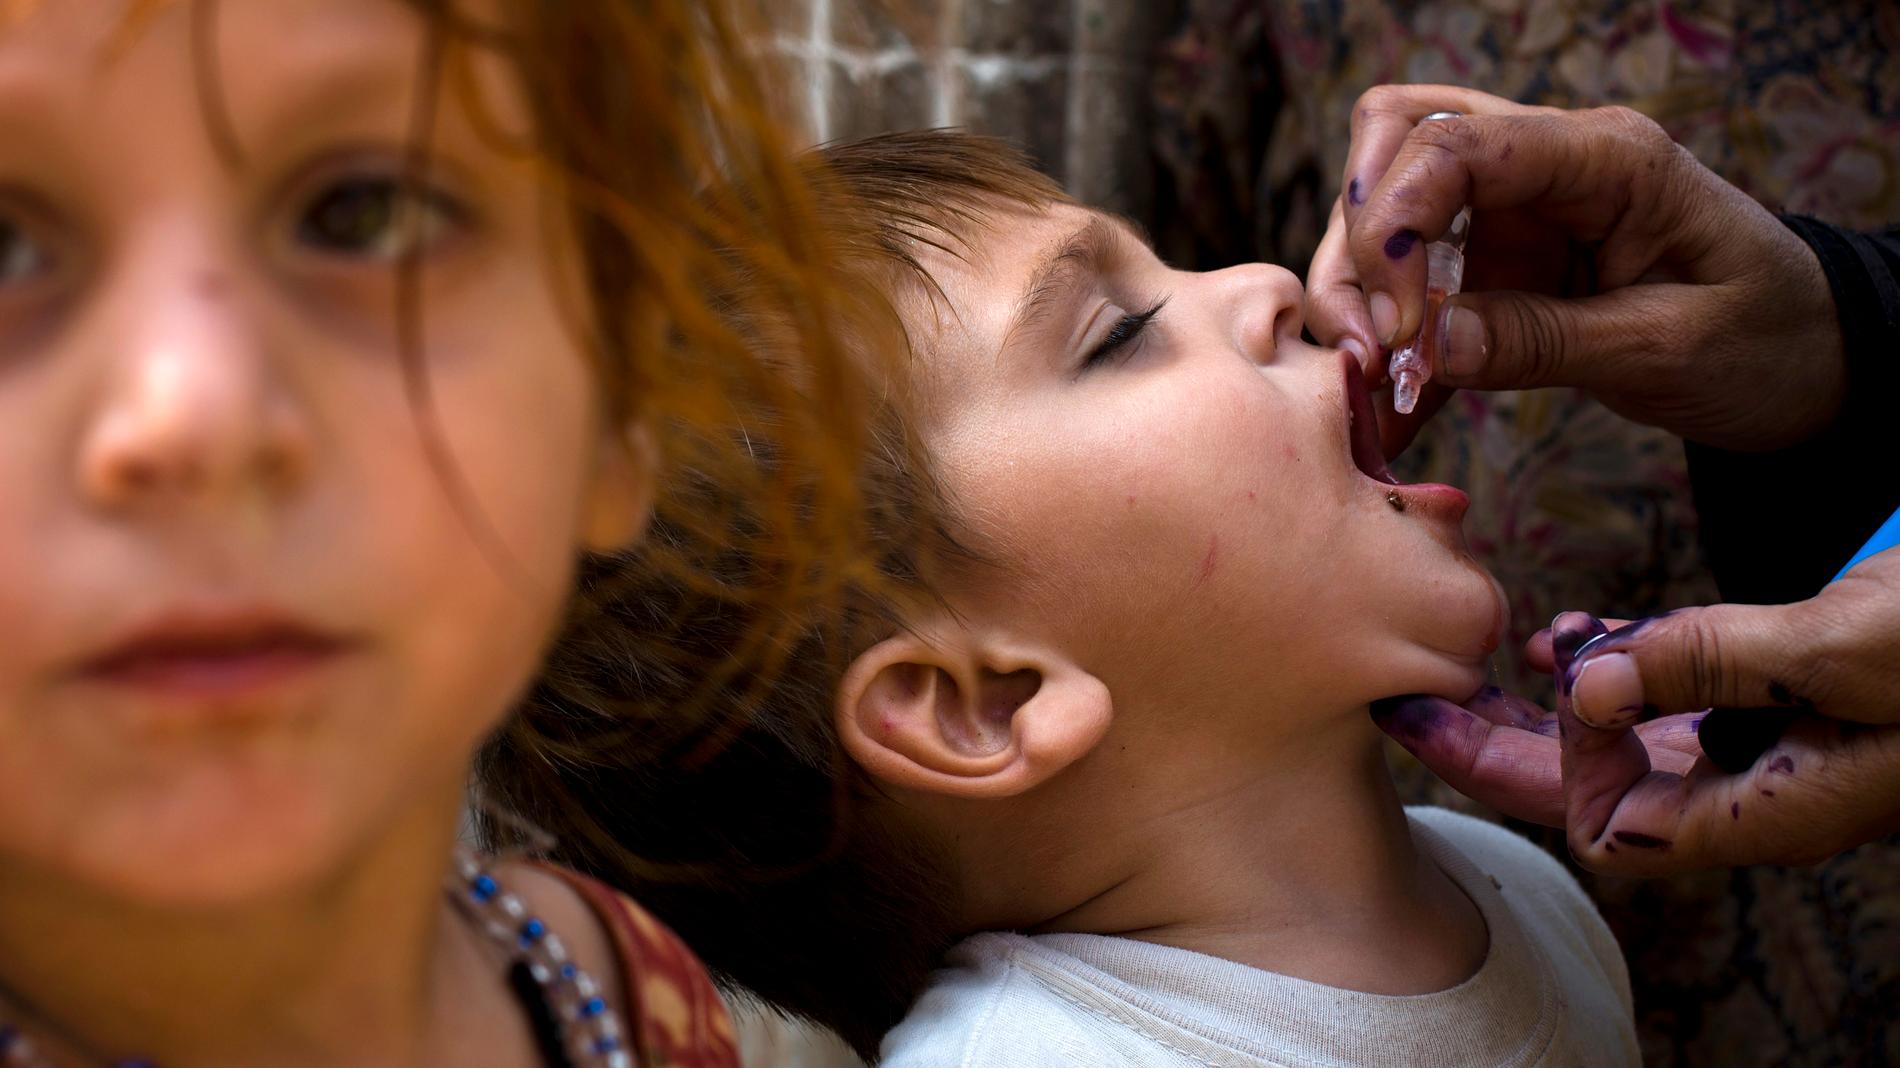 OPV-vaccinet ges genom droppar i munnen. Efter fyra doser i olika åldrar beräknas barn ha full immunitet mot polioviruset.